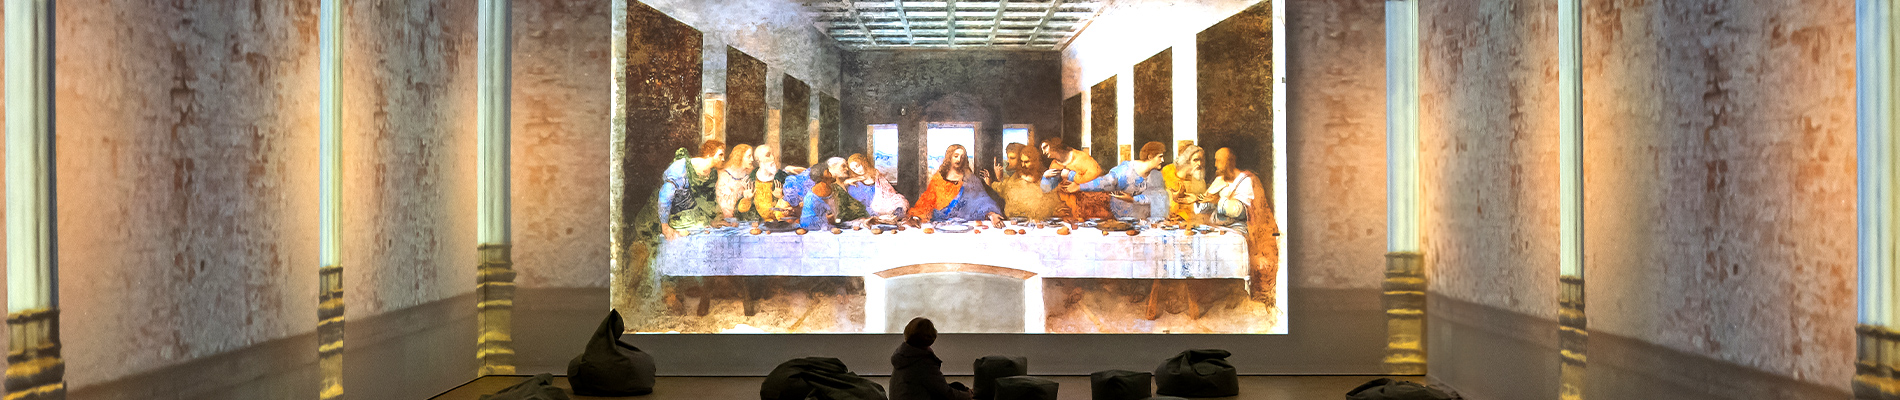 Leonardo Da Vinci`s Last Supper